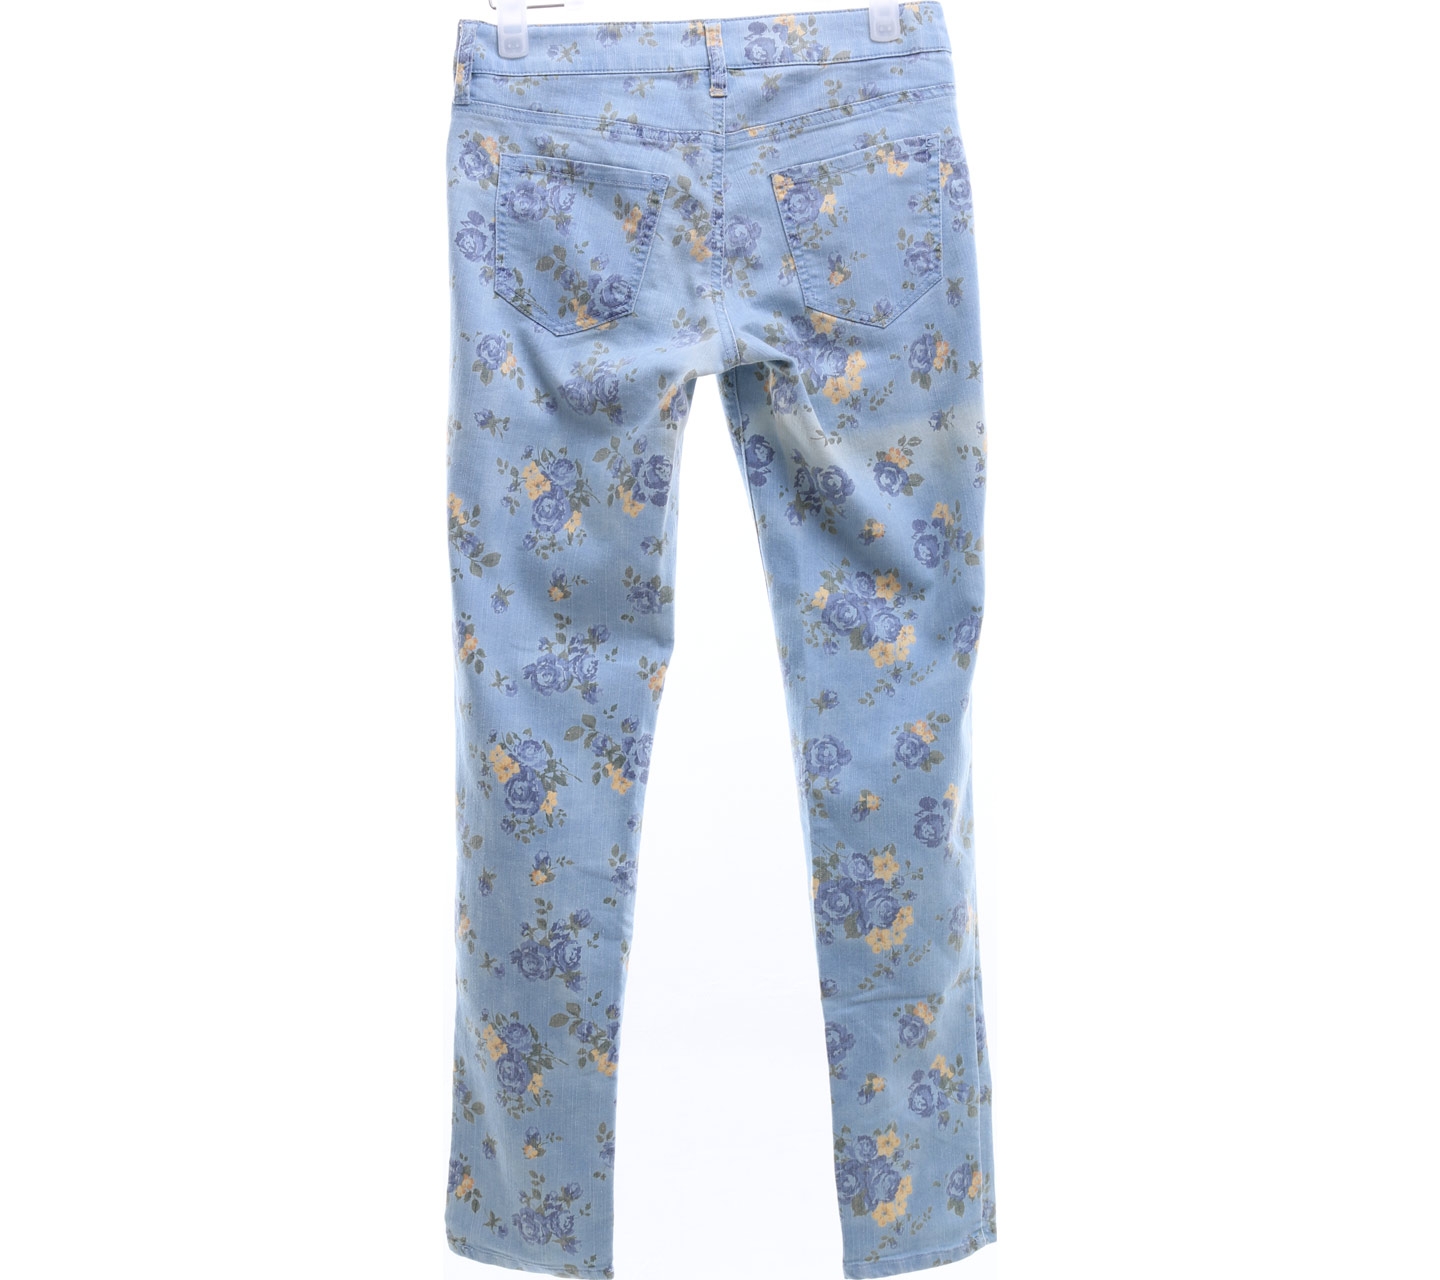 Lowrys Farm Floral Blue Long Pants